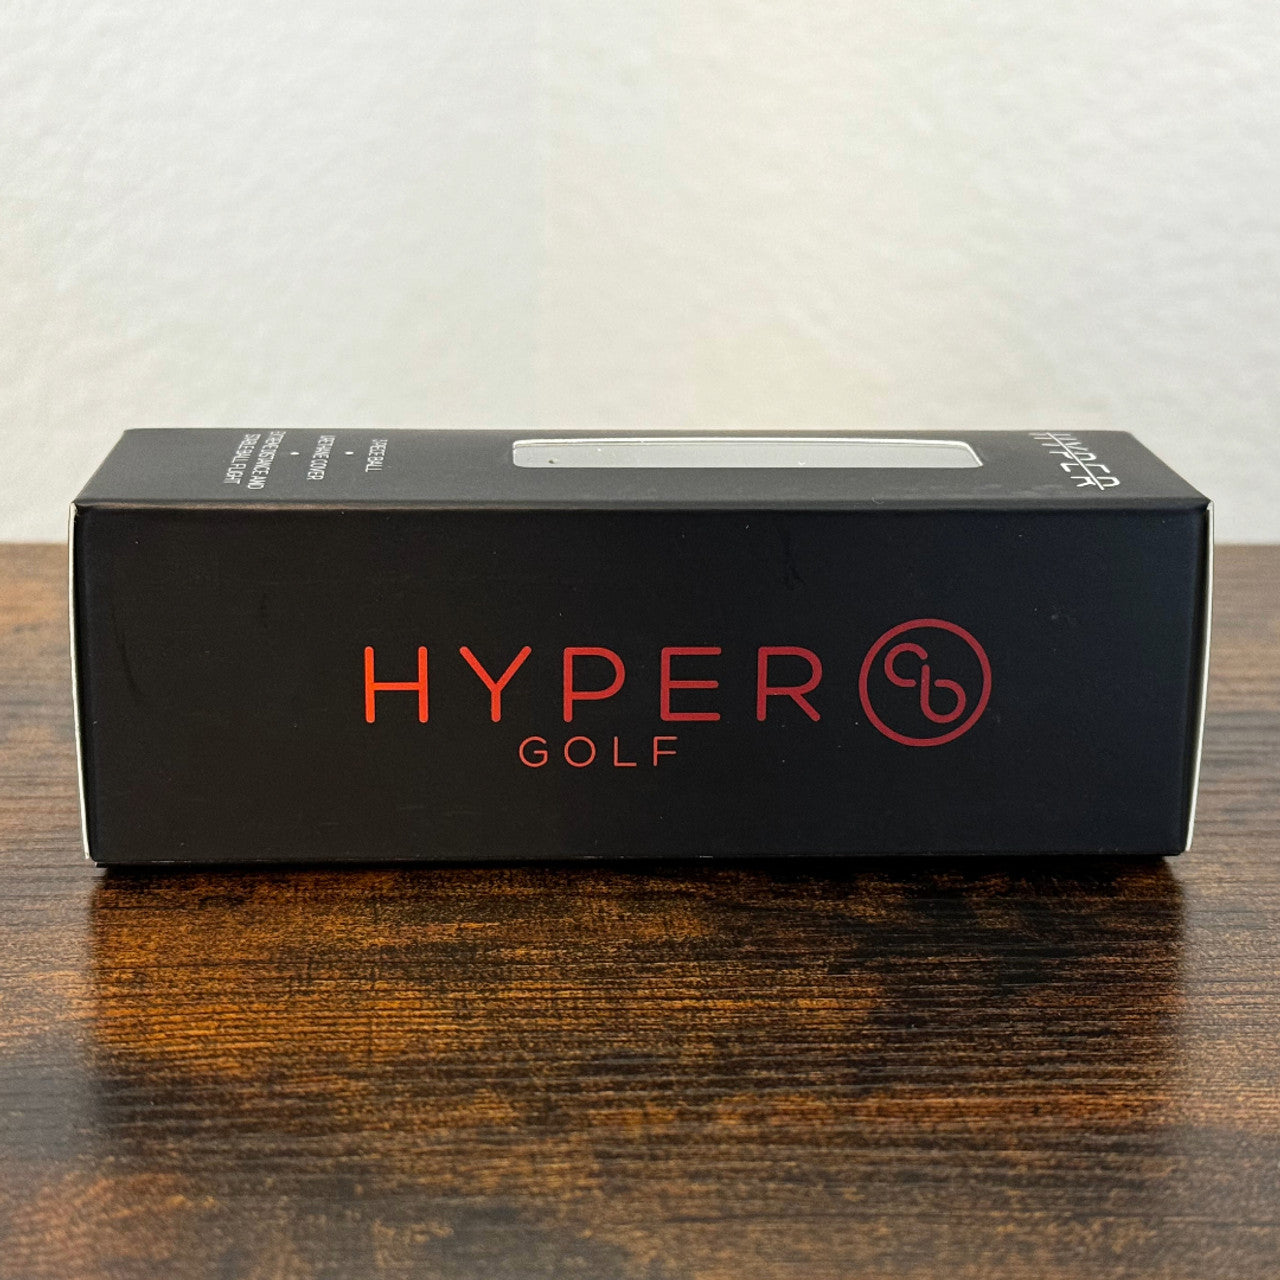 HYPER One Golf Balls (12 Pack)